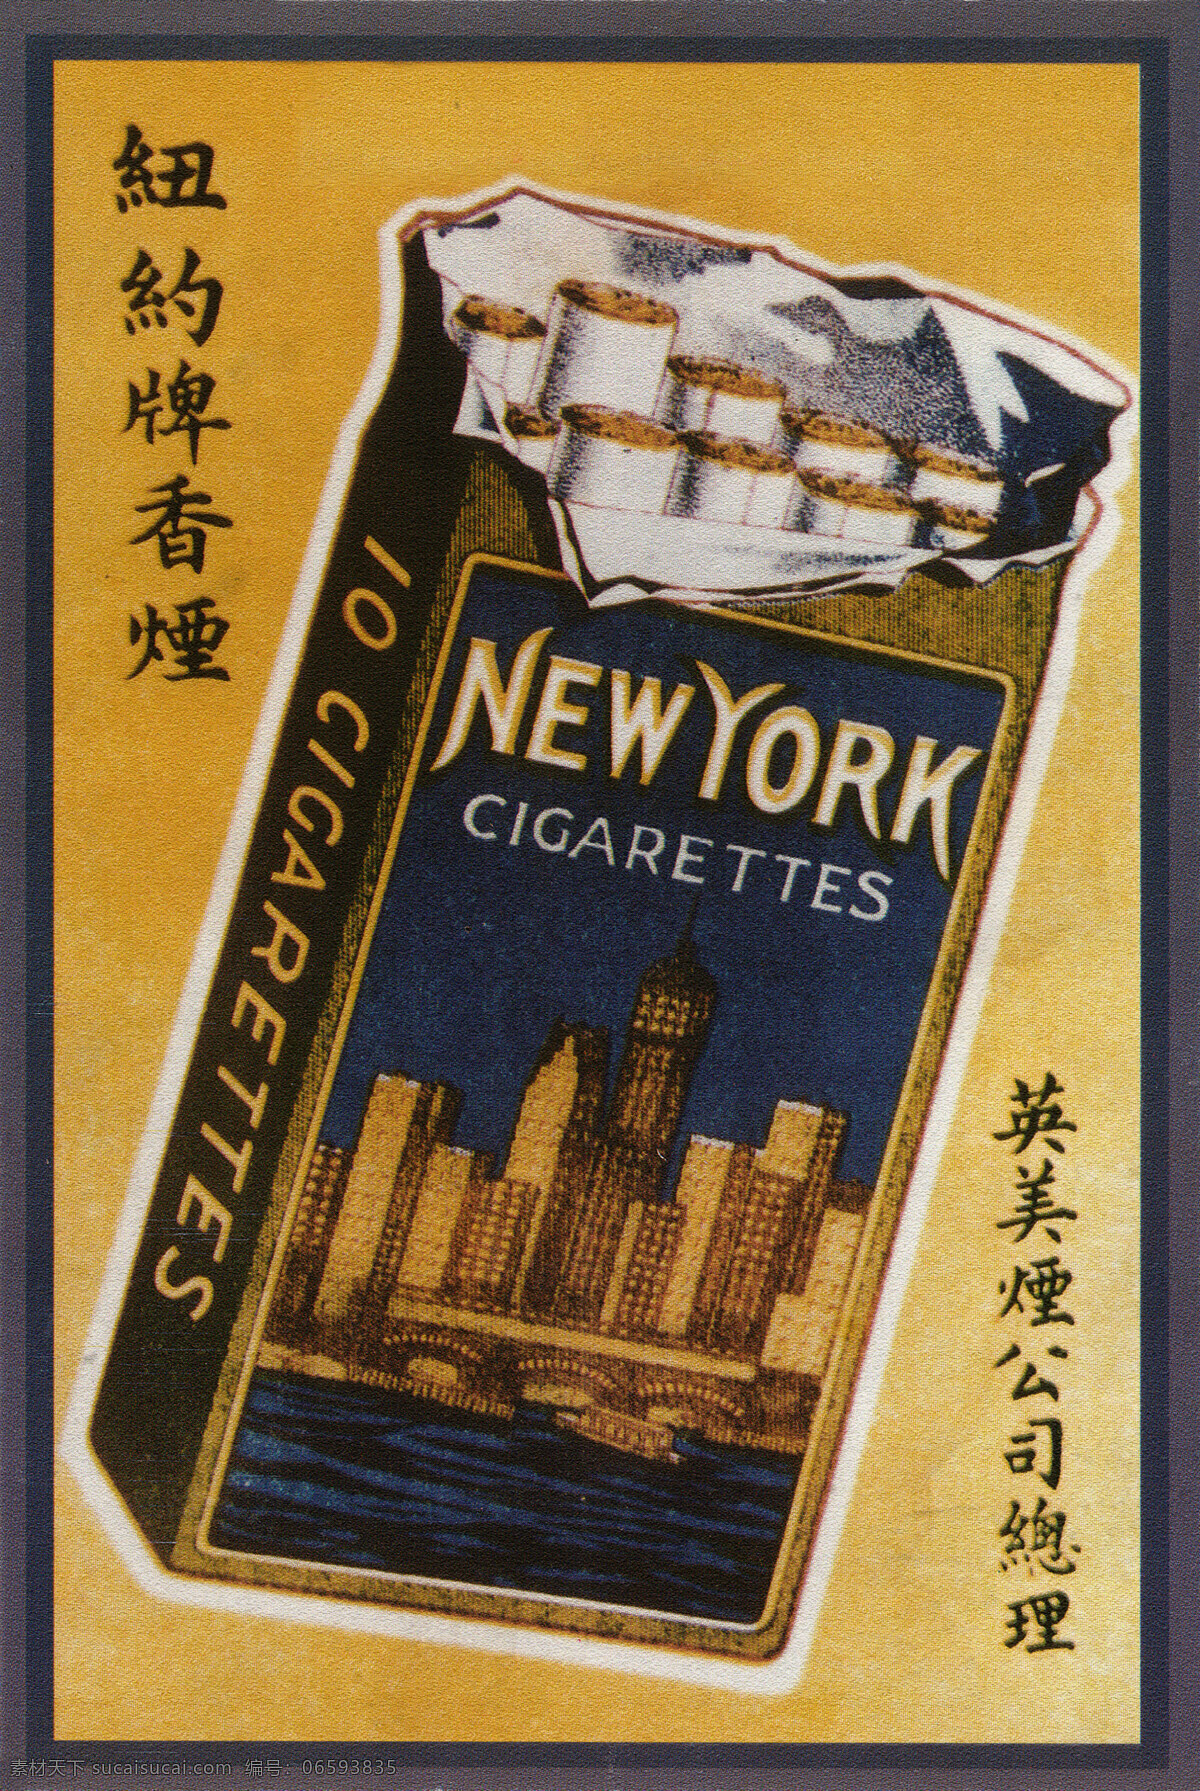 民国 时期 老广 告 海报 老广告 旧社会 招贴画 素材资料 烟标 烟草广告 中国 近代 招贴设计